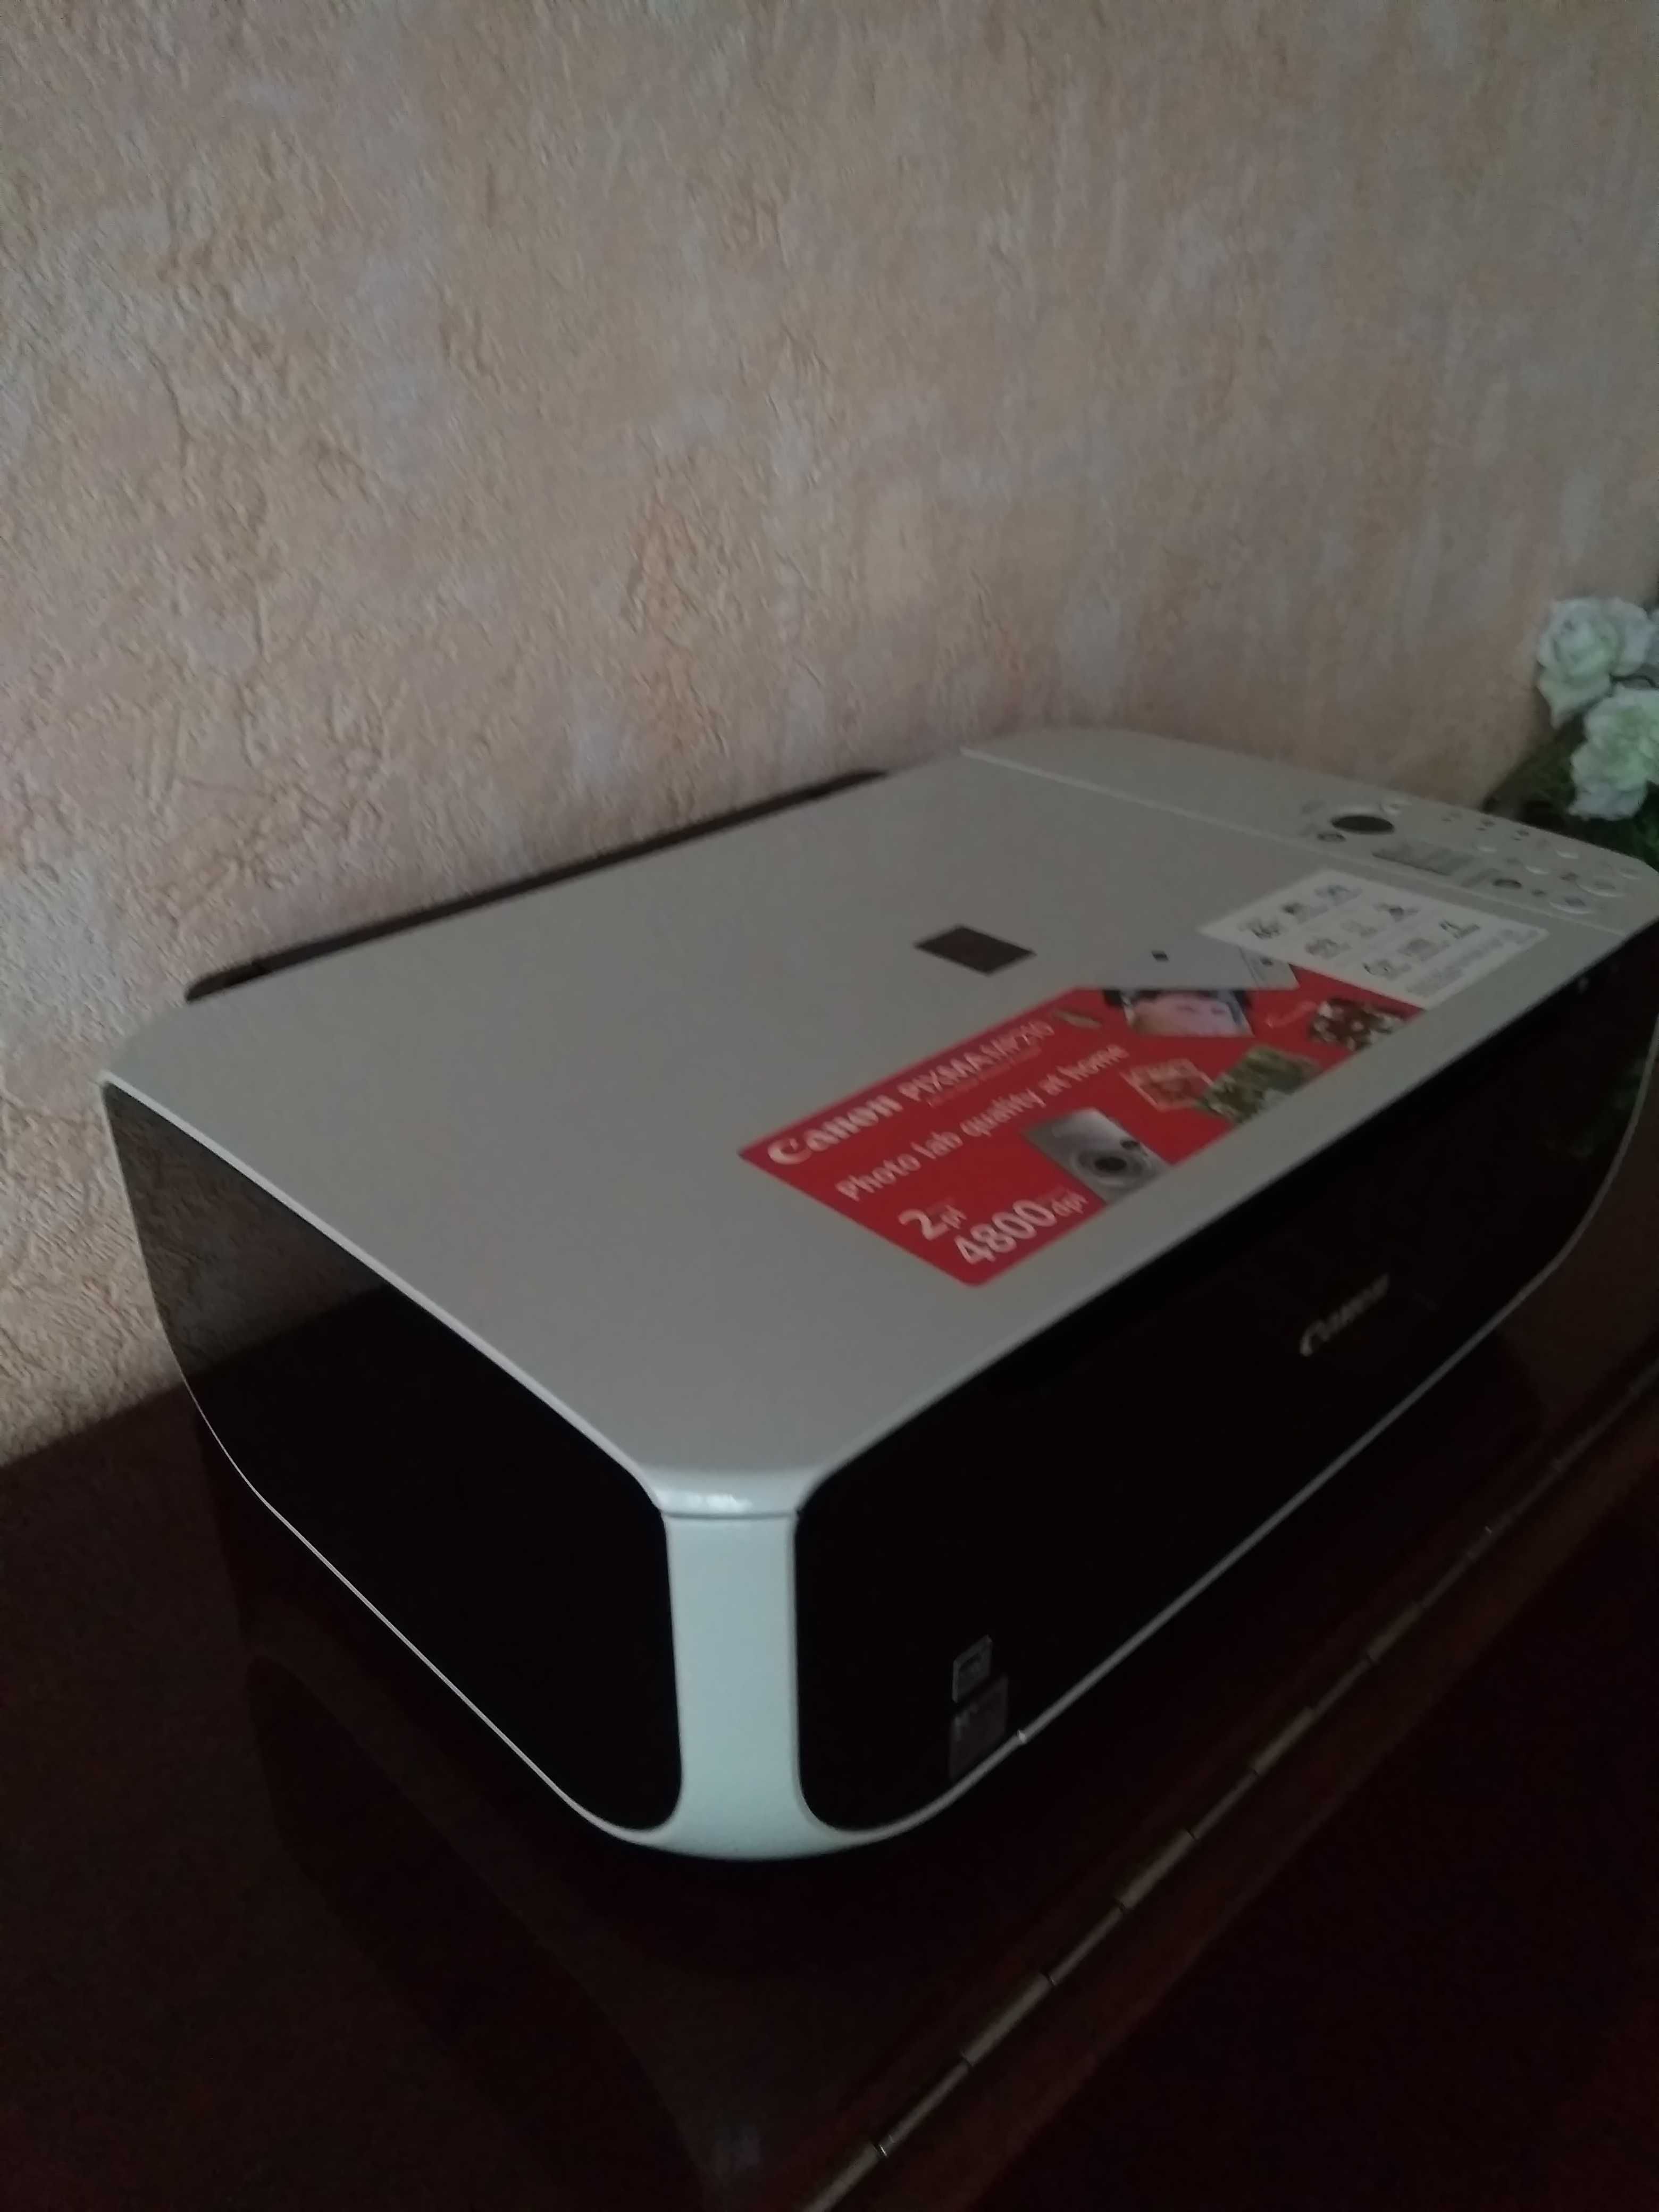 Принтер сканер ксерокс Canon MP210 (3 в 1), как новый